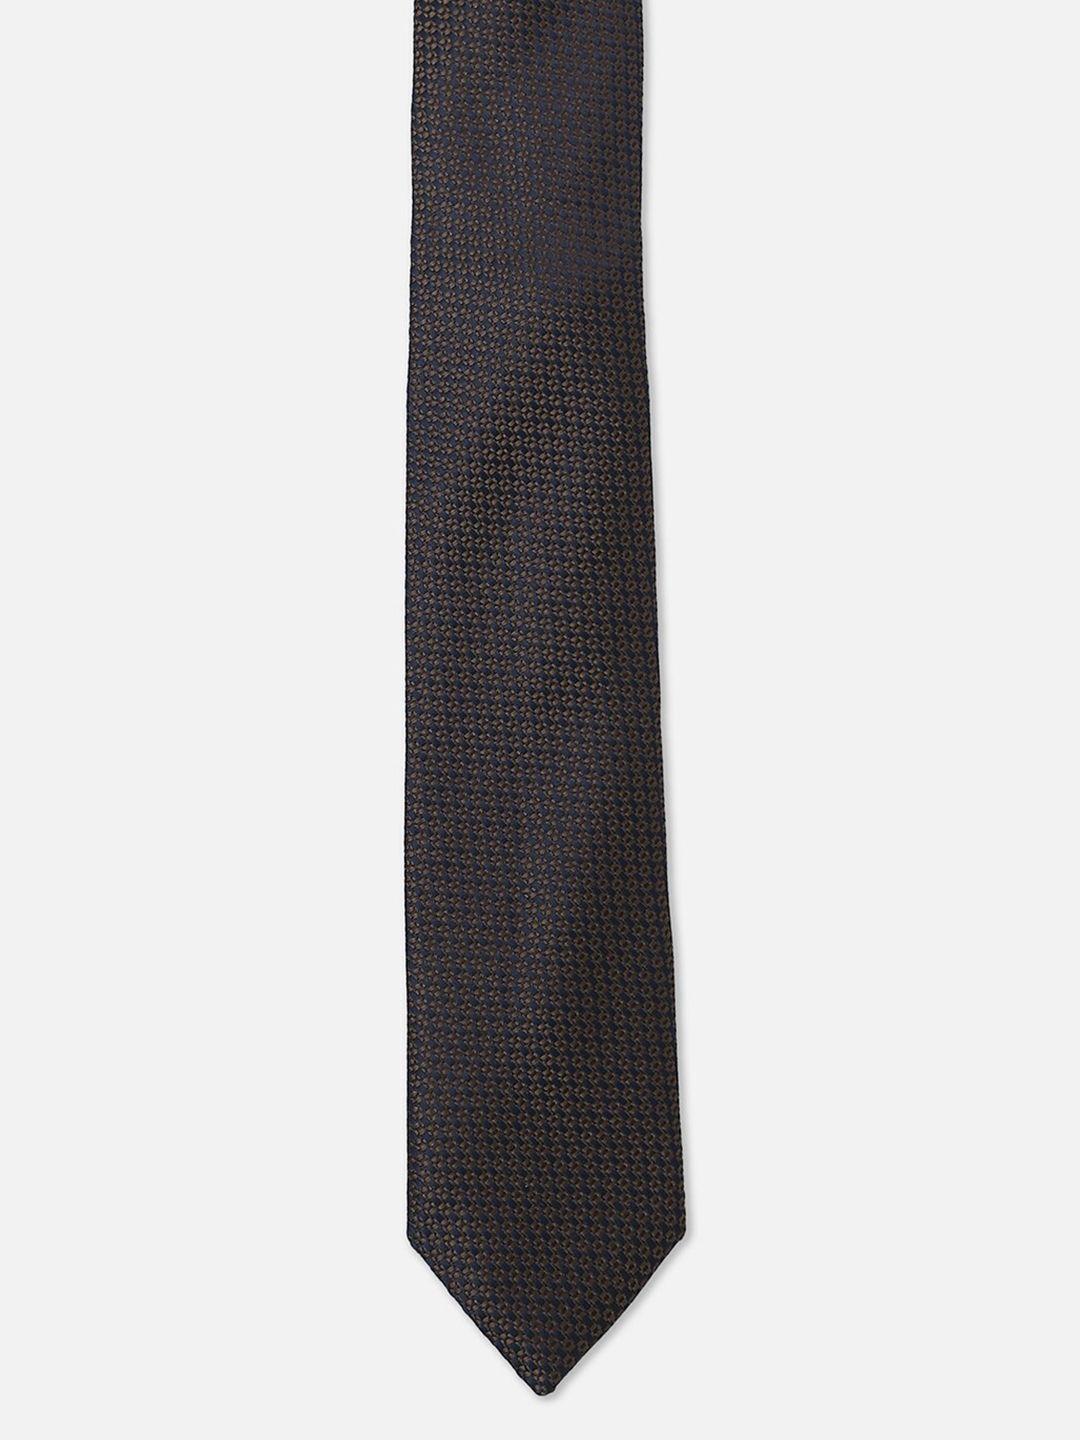 allen solly men woven design skinny tie